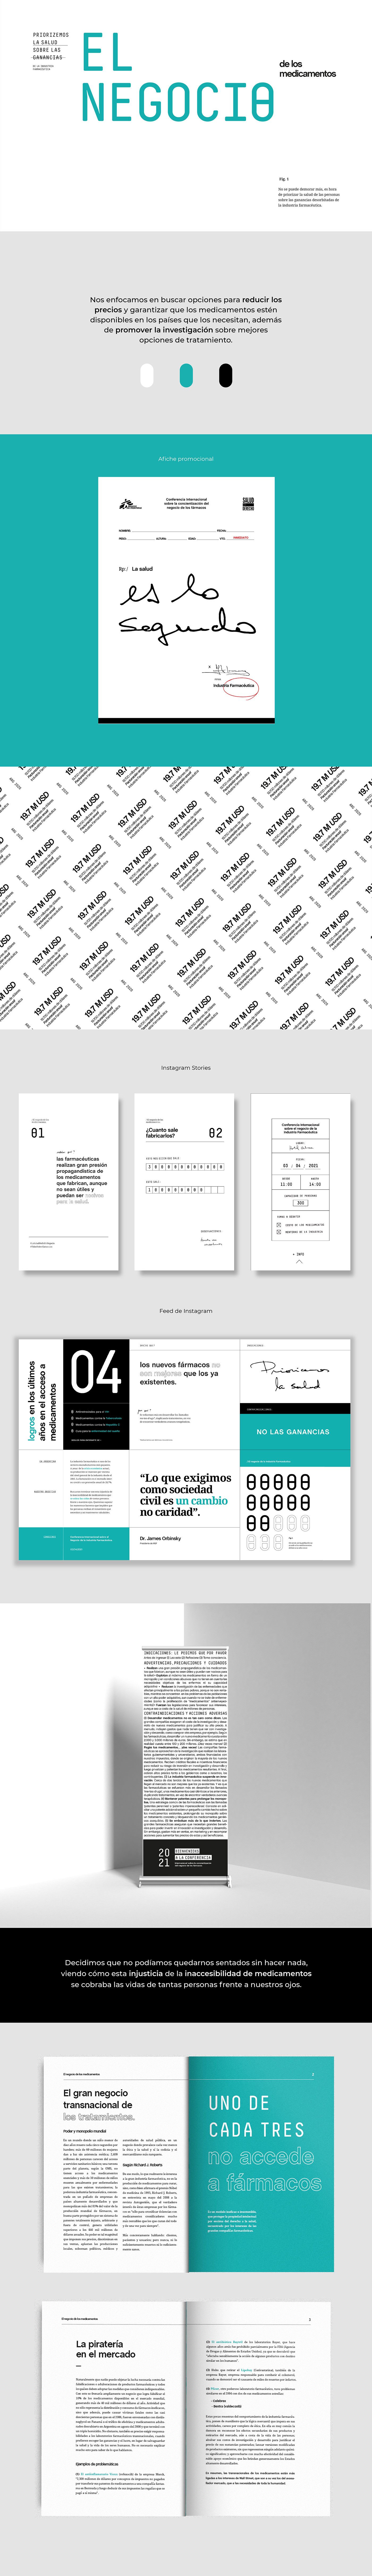 Campaña cosgaya diseño gráfico editorial fadu graphic design  identidad sistema tipografia typography  